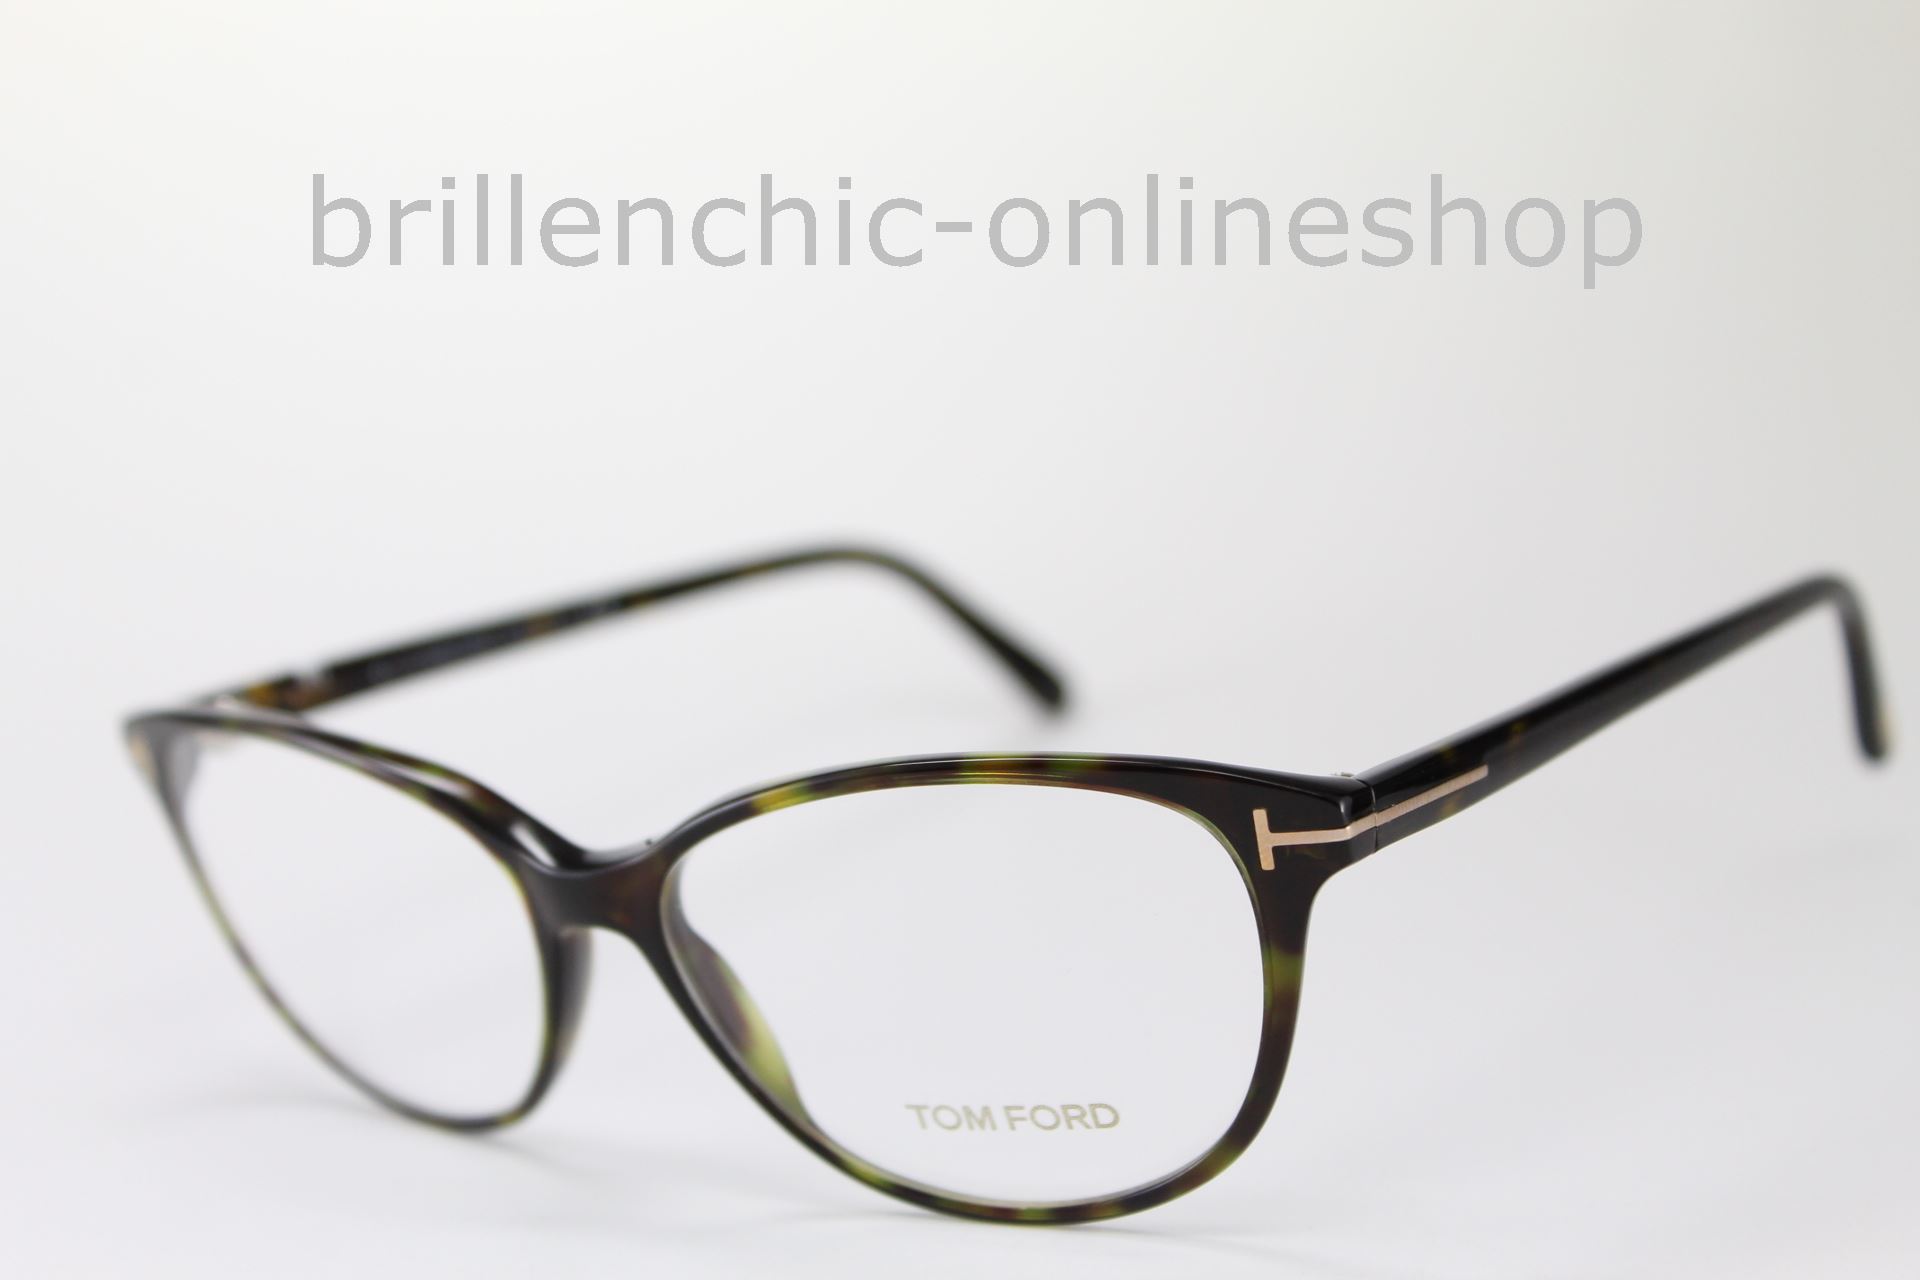 Brillenchic - onlineshop Berlin Ihr starker Partner für exklusive Brillen  online kaufen/TOM FORD TF 5421 052 exklusiv im Brillenchic-Onlineshop